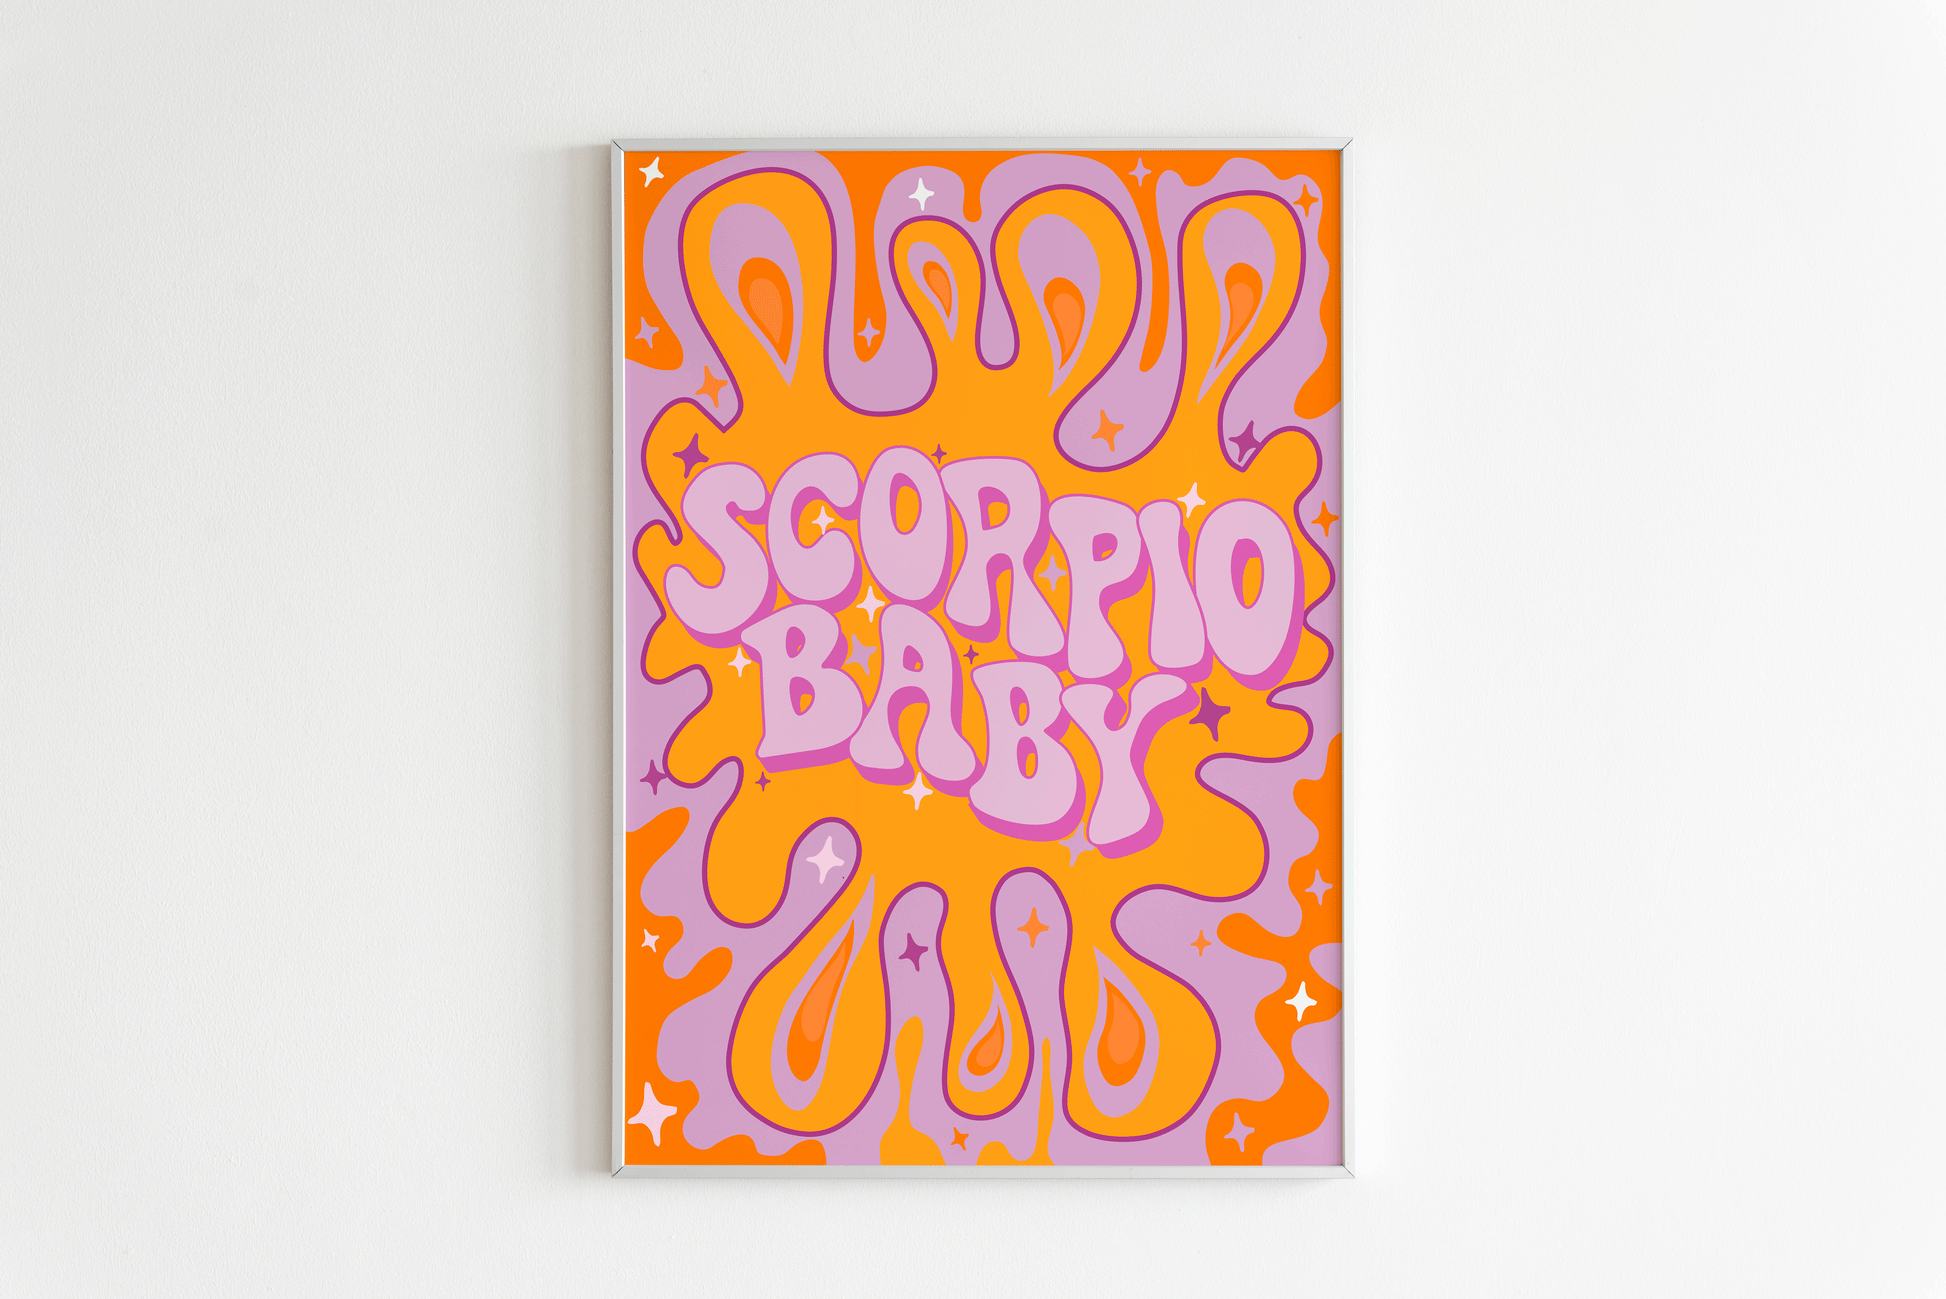 Scorpio Wall Print - PrintedWeird